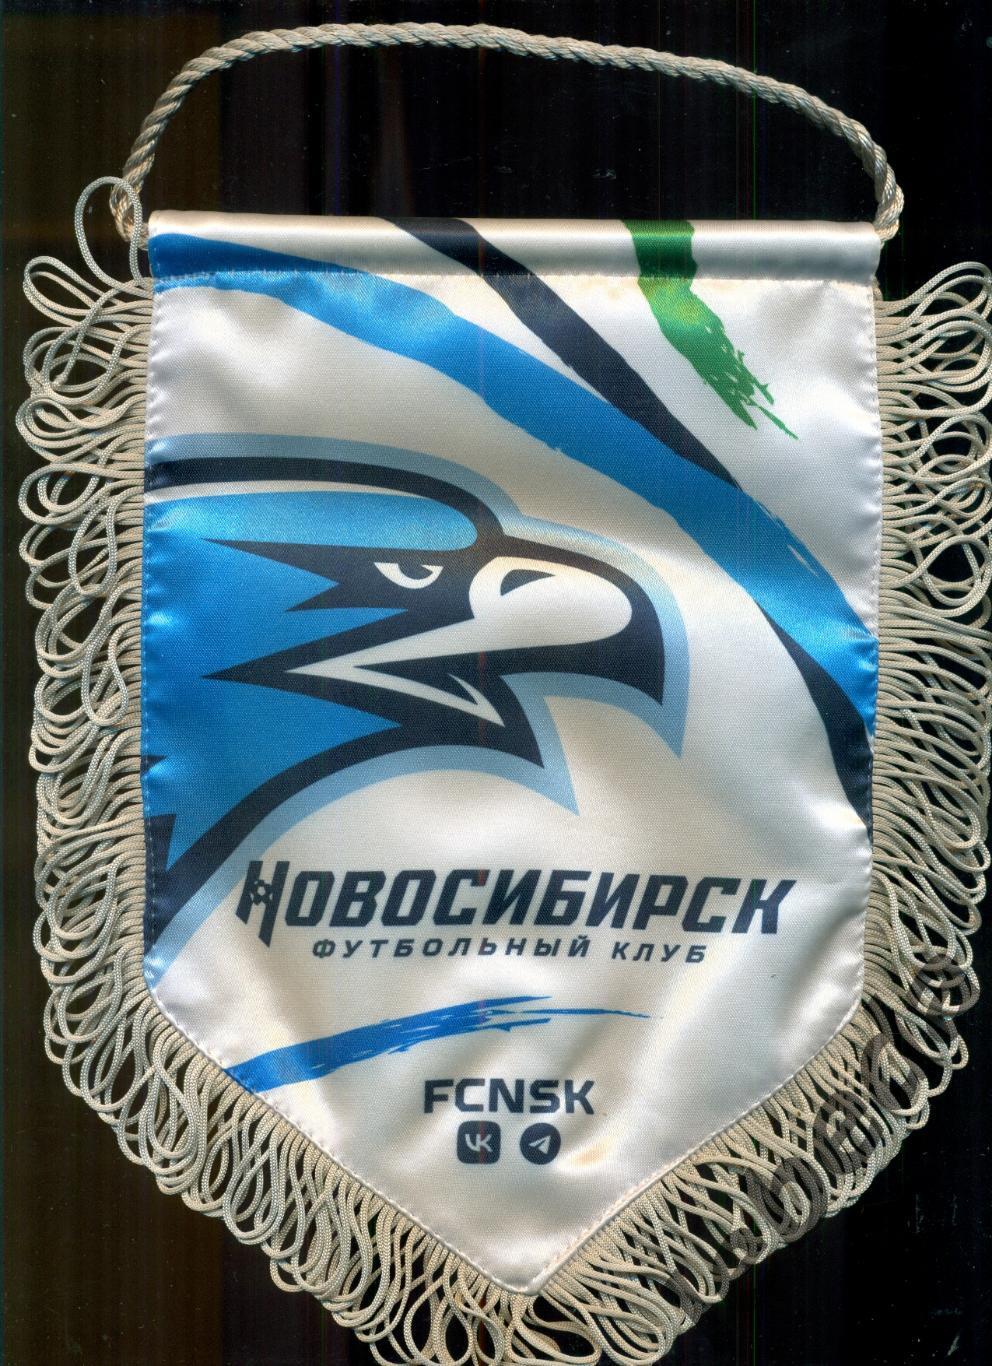 ФК Новосибирск (Вымел)